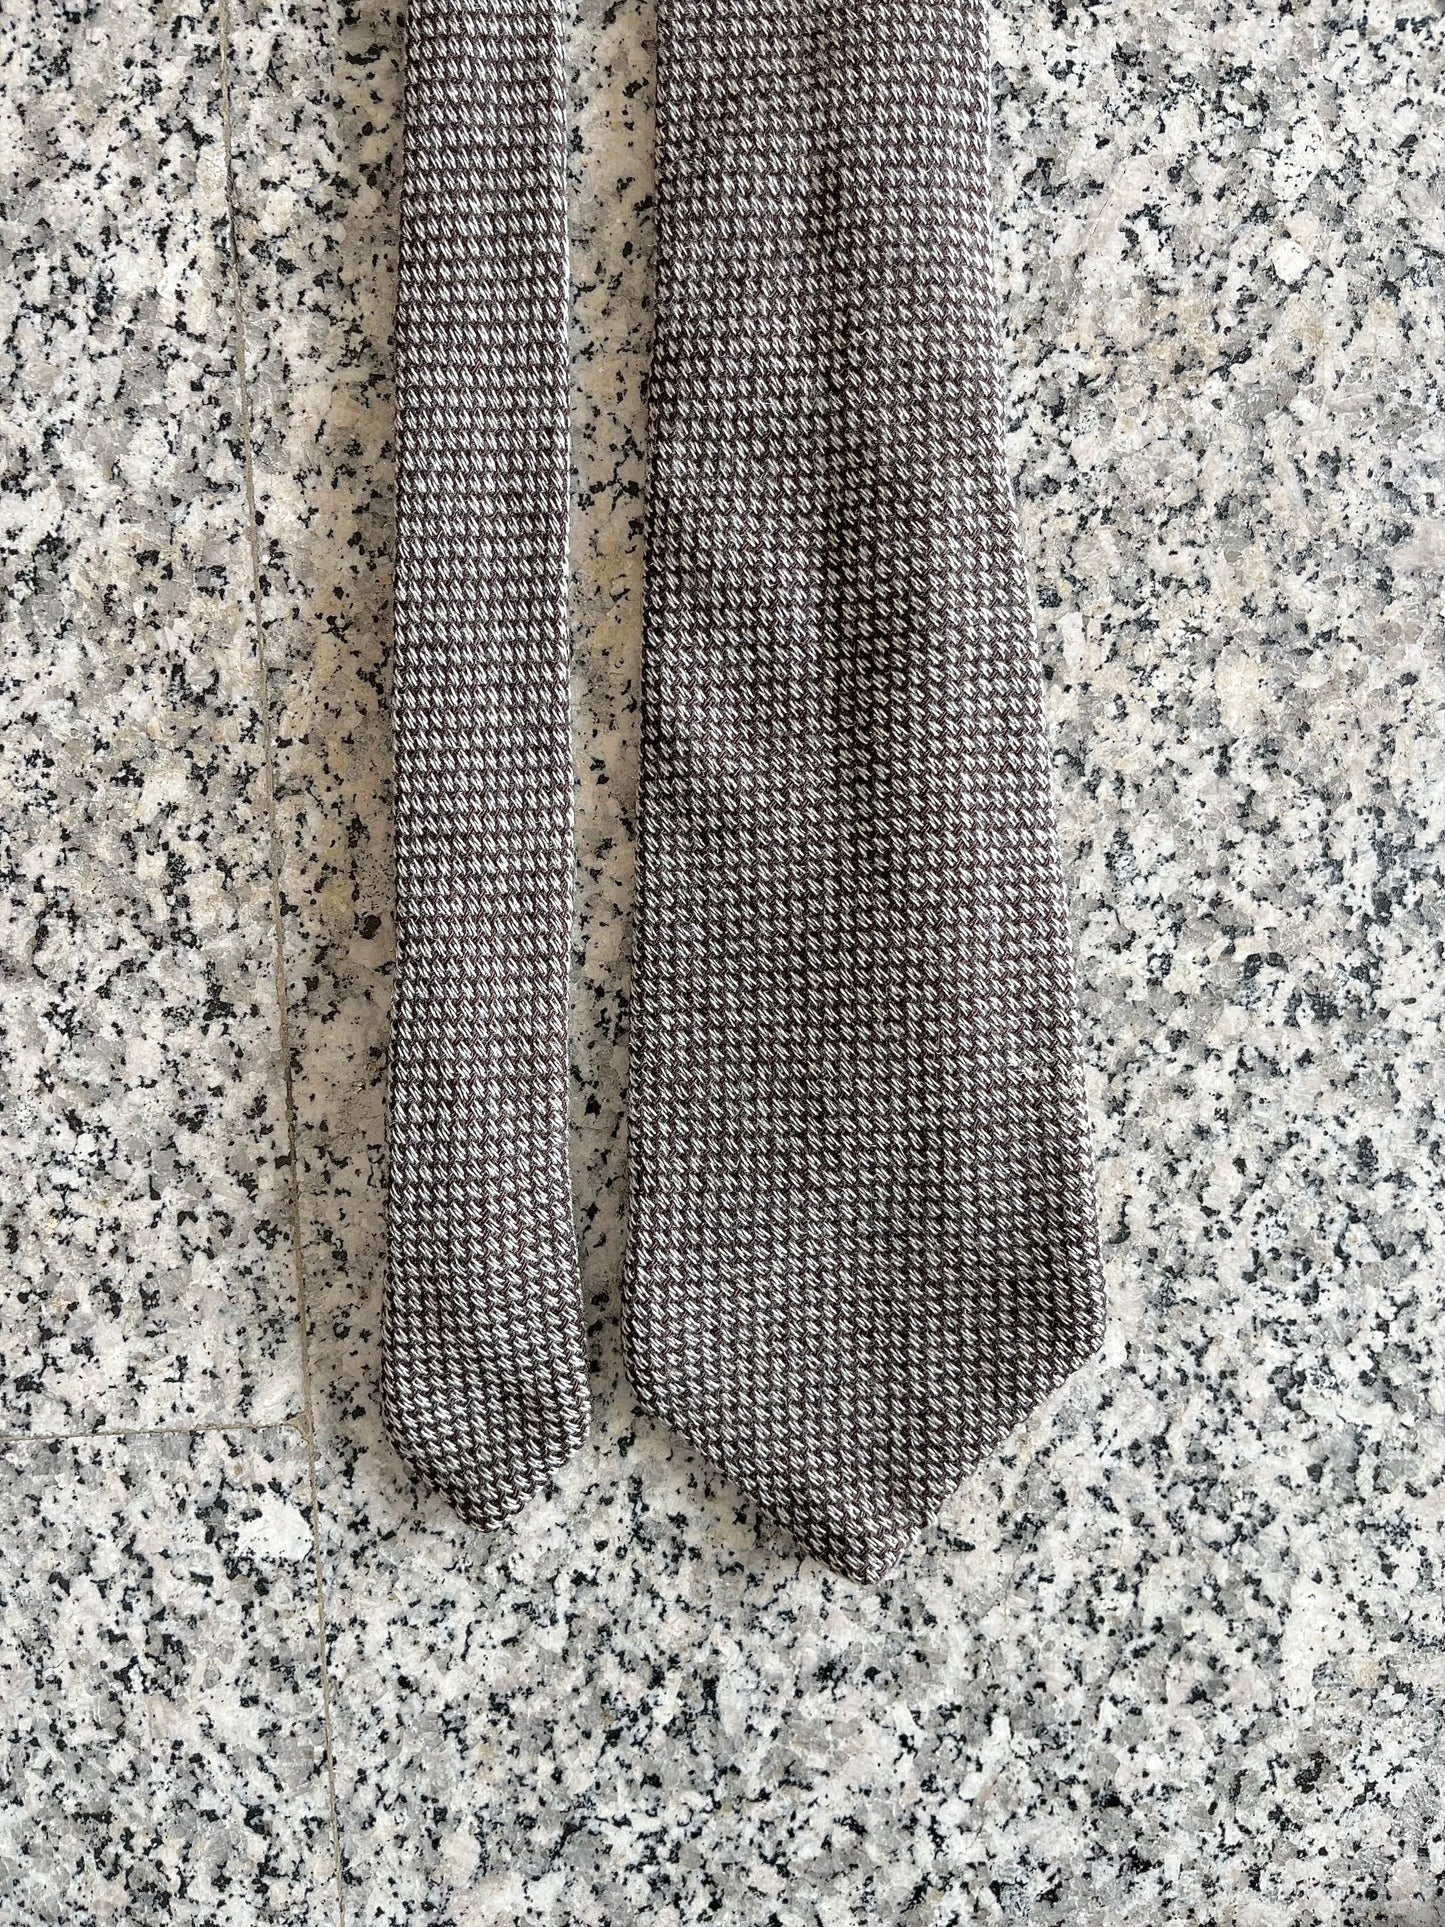 Cravatta anni ‘90 lana